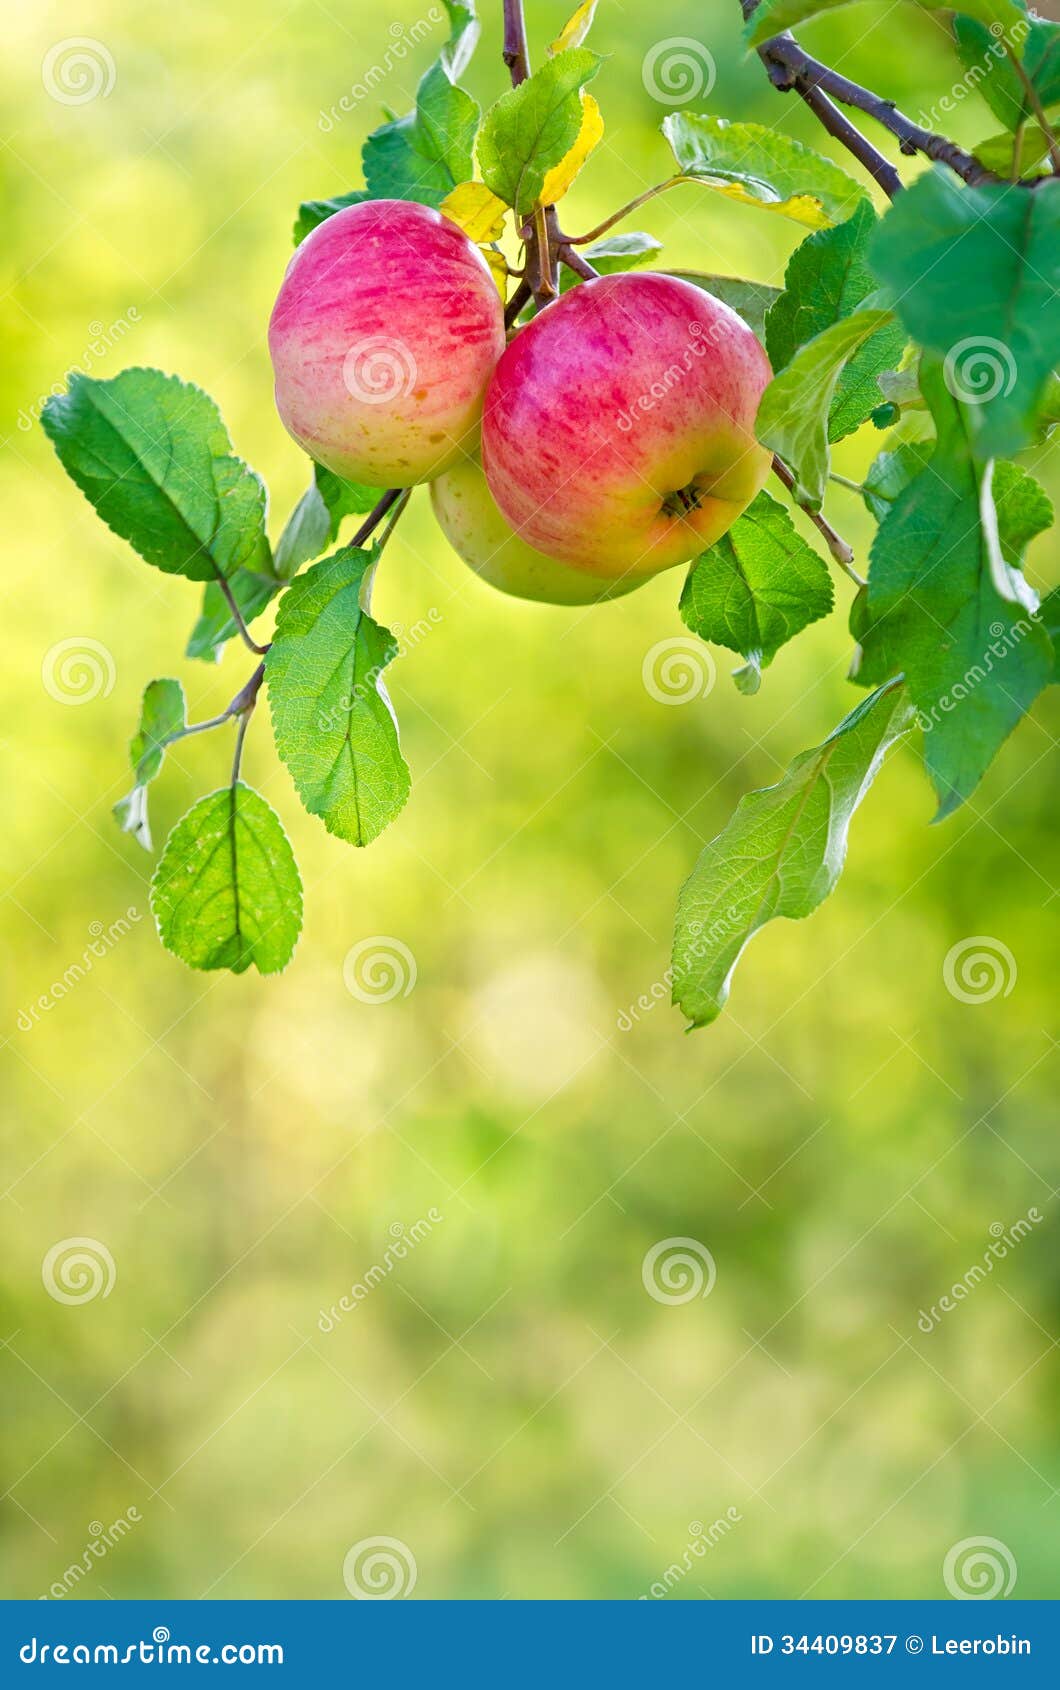 Apple som växer på en trädfilial. Växa för Apple frukter på en äppleträdfilial. Naturlig gräsplan- och gulingbakgrund.